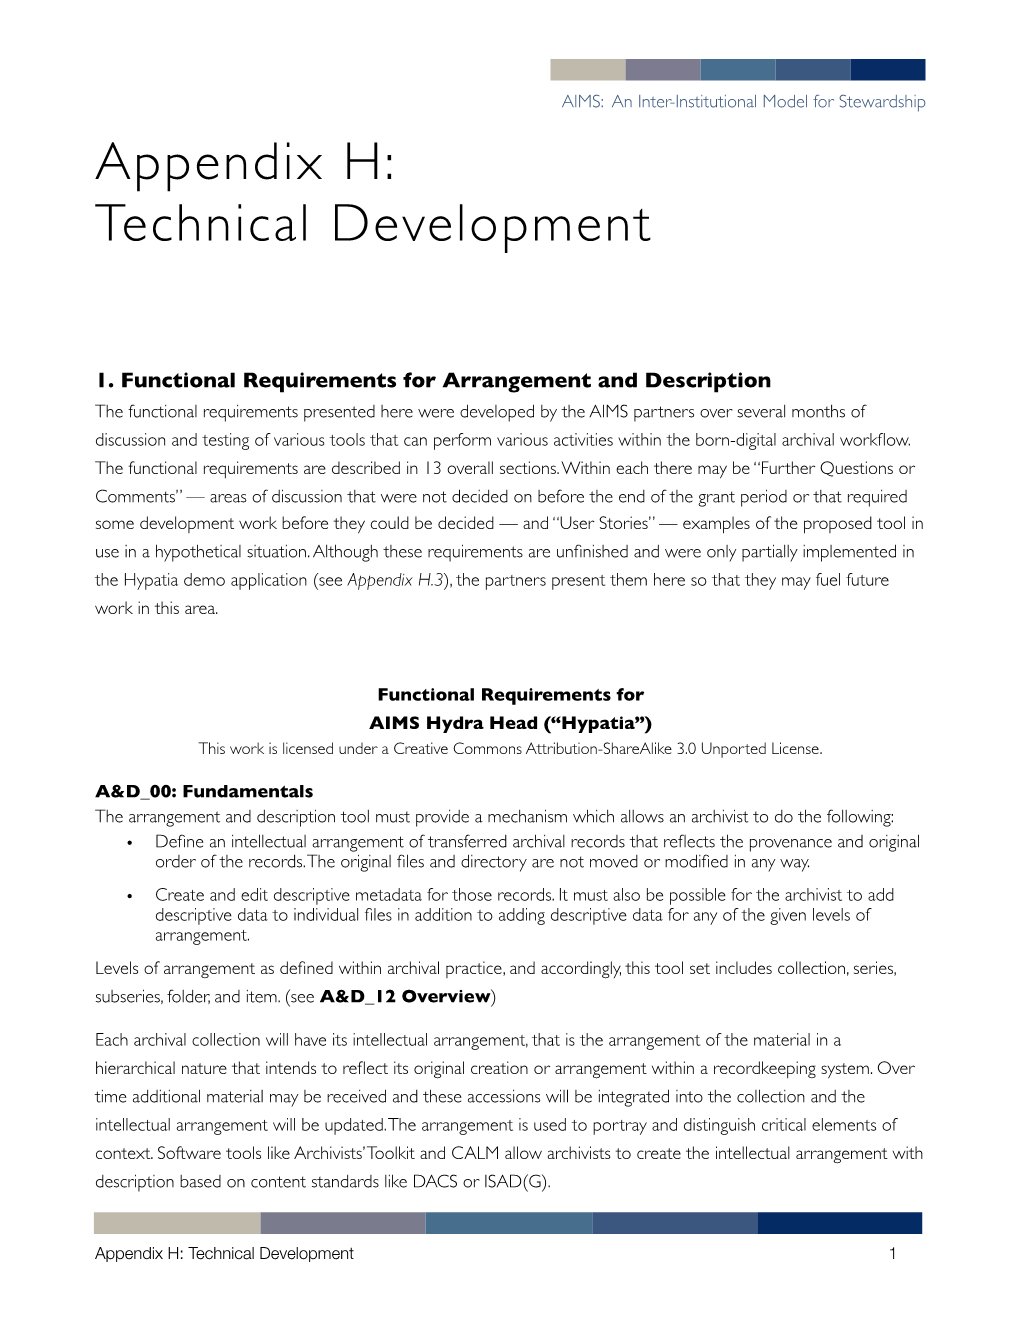 Technical Development